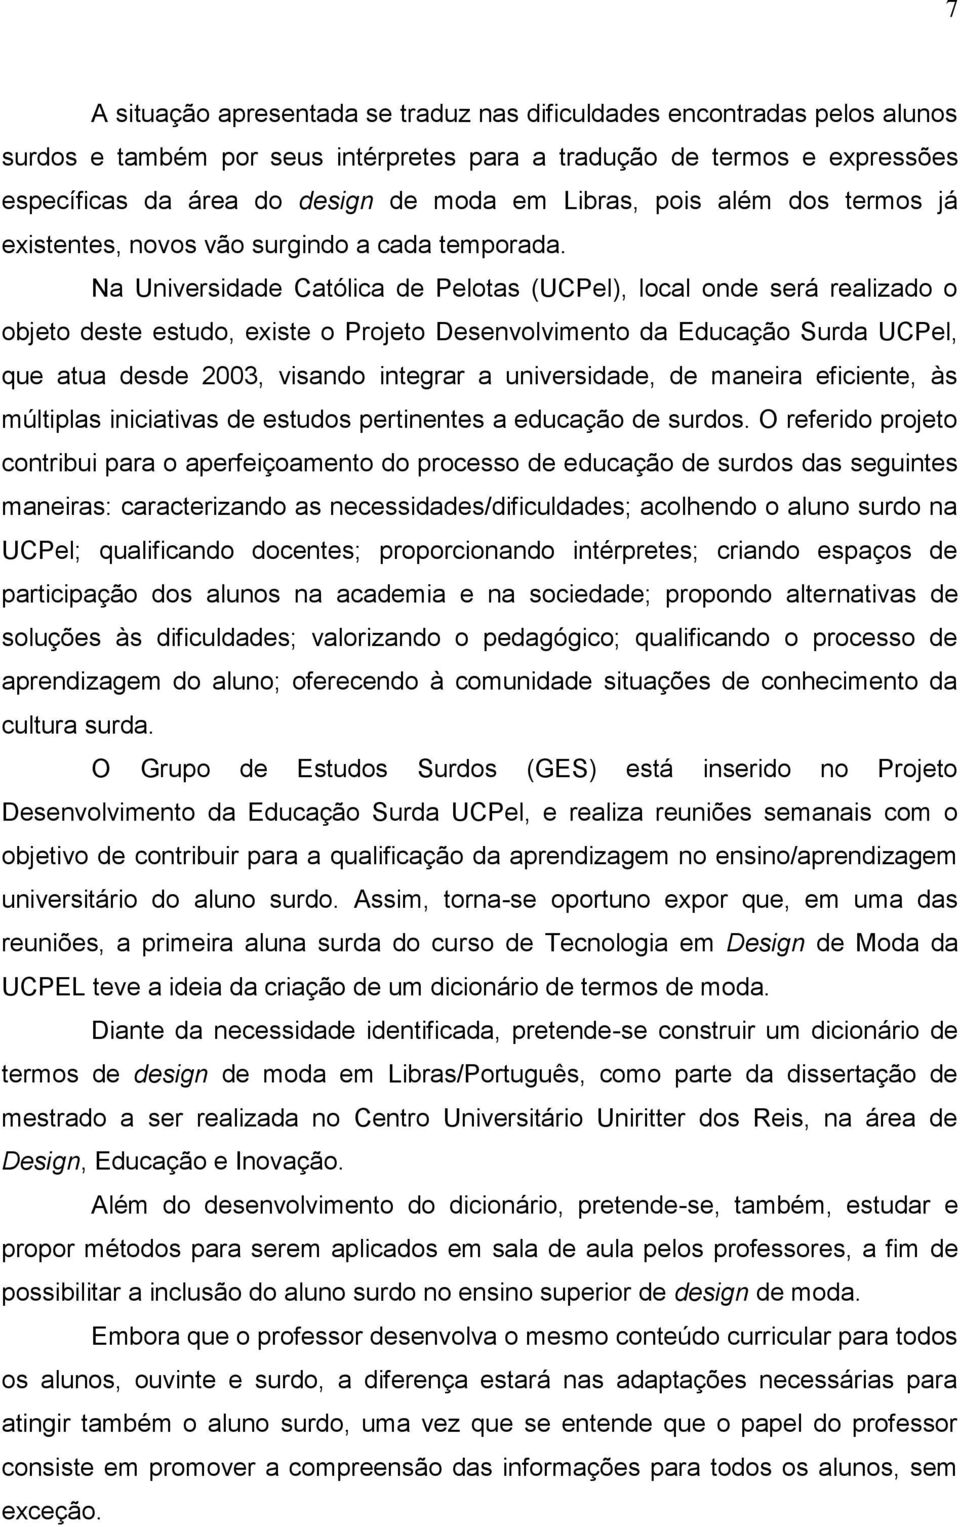 Na Universidade Católica de Pelotas (UCPel), local onde será realizado o objeto deste estudo, existe o Projeto Desenvolvimento da Educação Surda UCPel, que atua desde 2003, visando integrar a